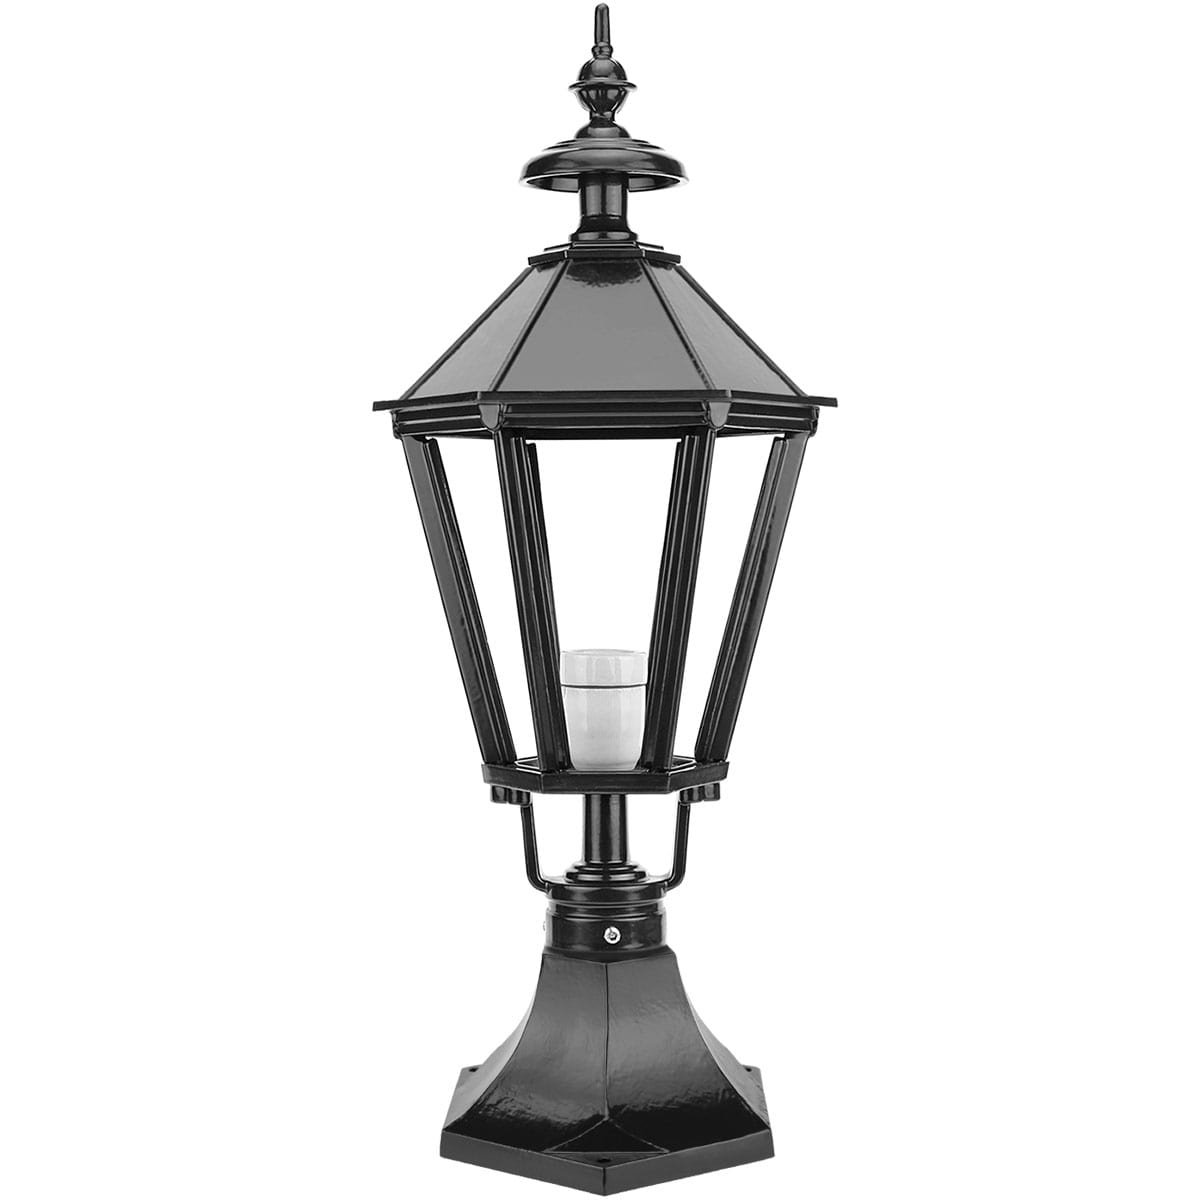 Outdoor lamp Vinkeveen - 64 cm